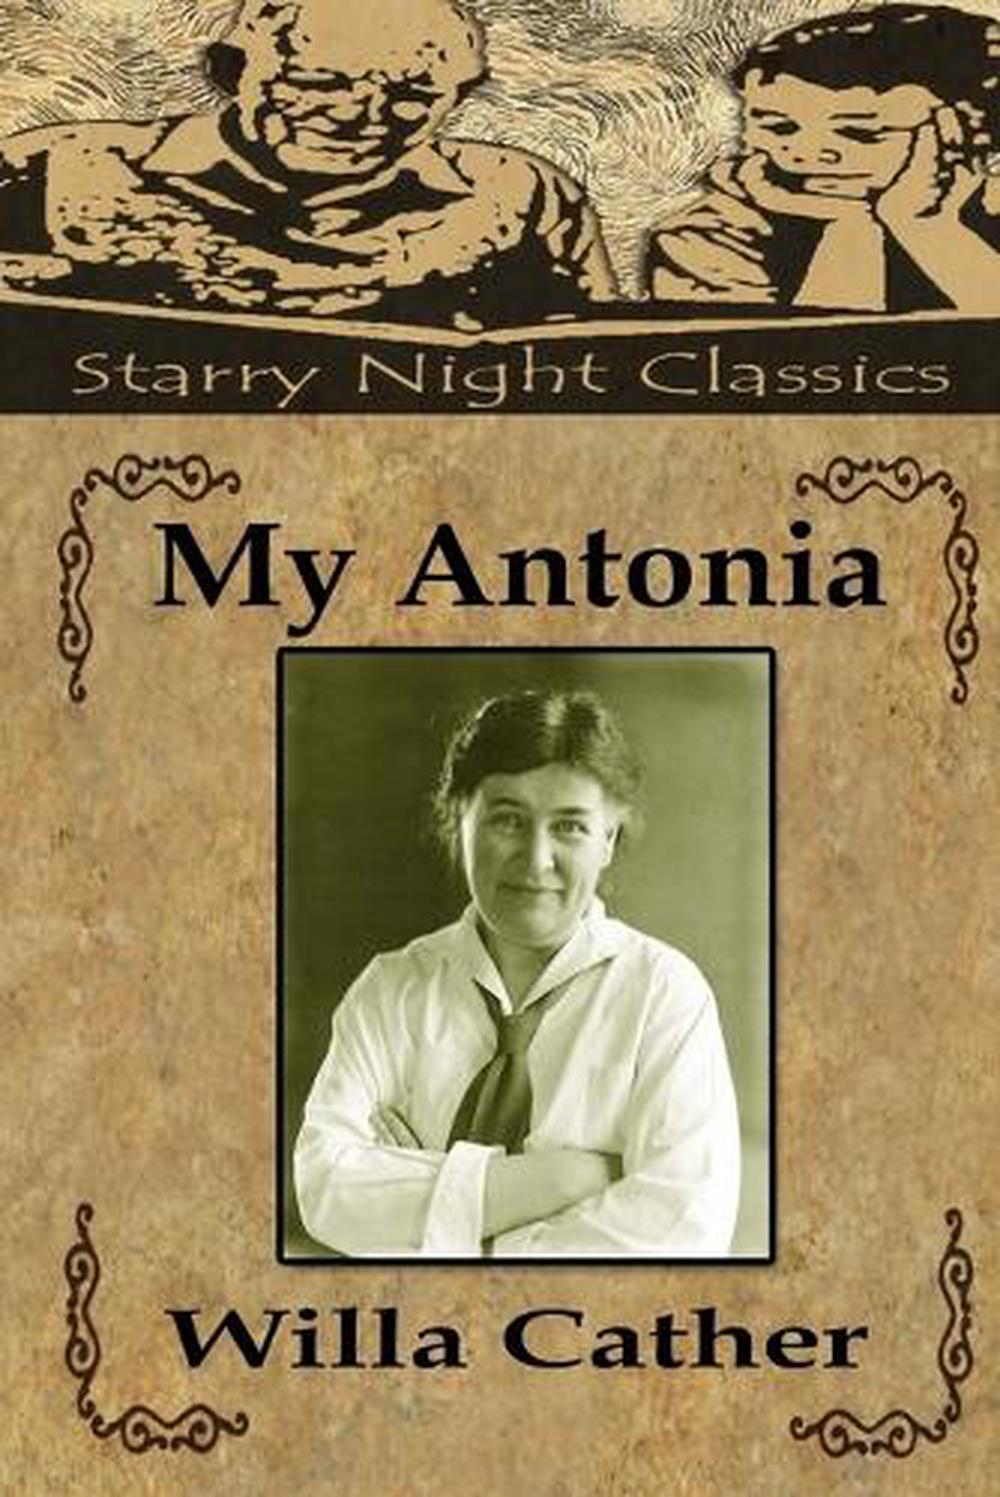 my antonia novel